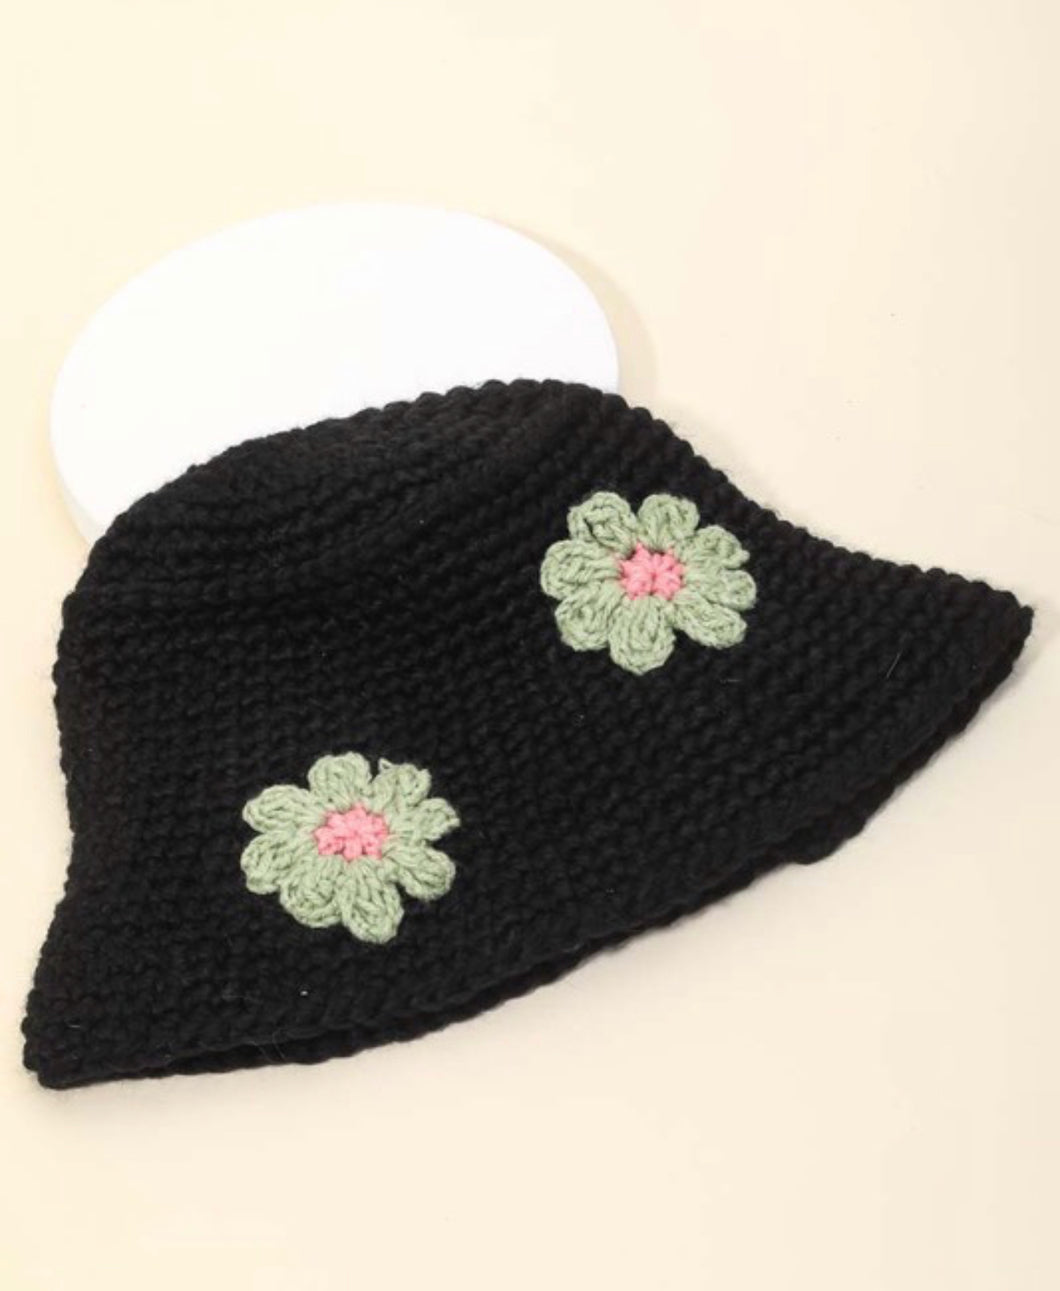 Crochet Knit Flower Bucket Hat